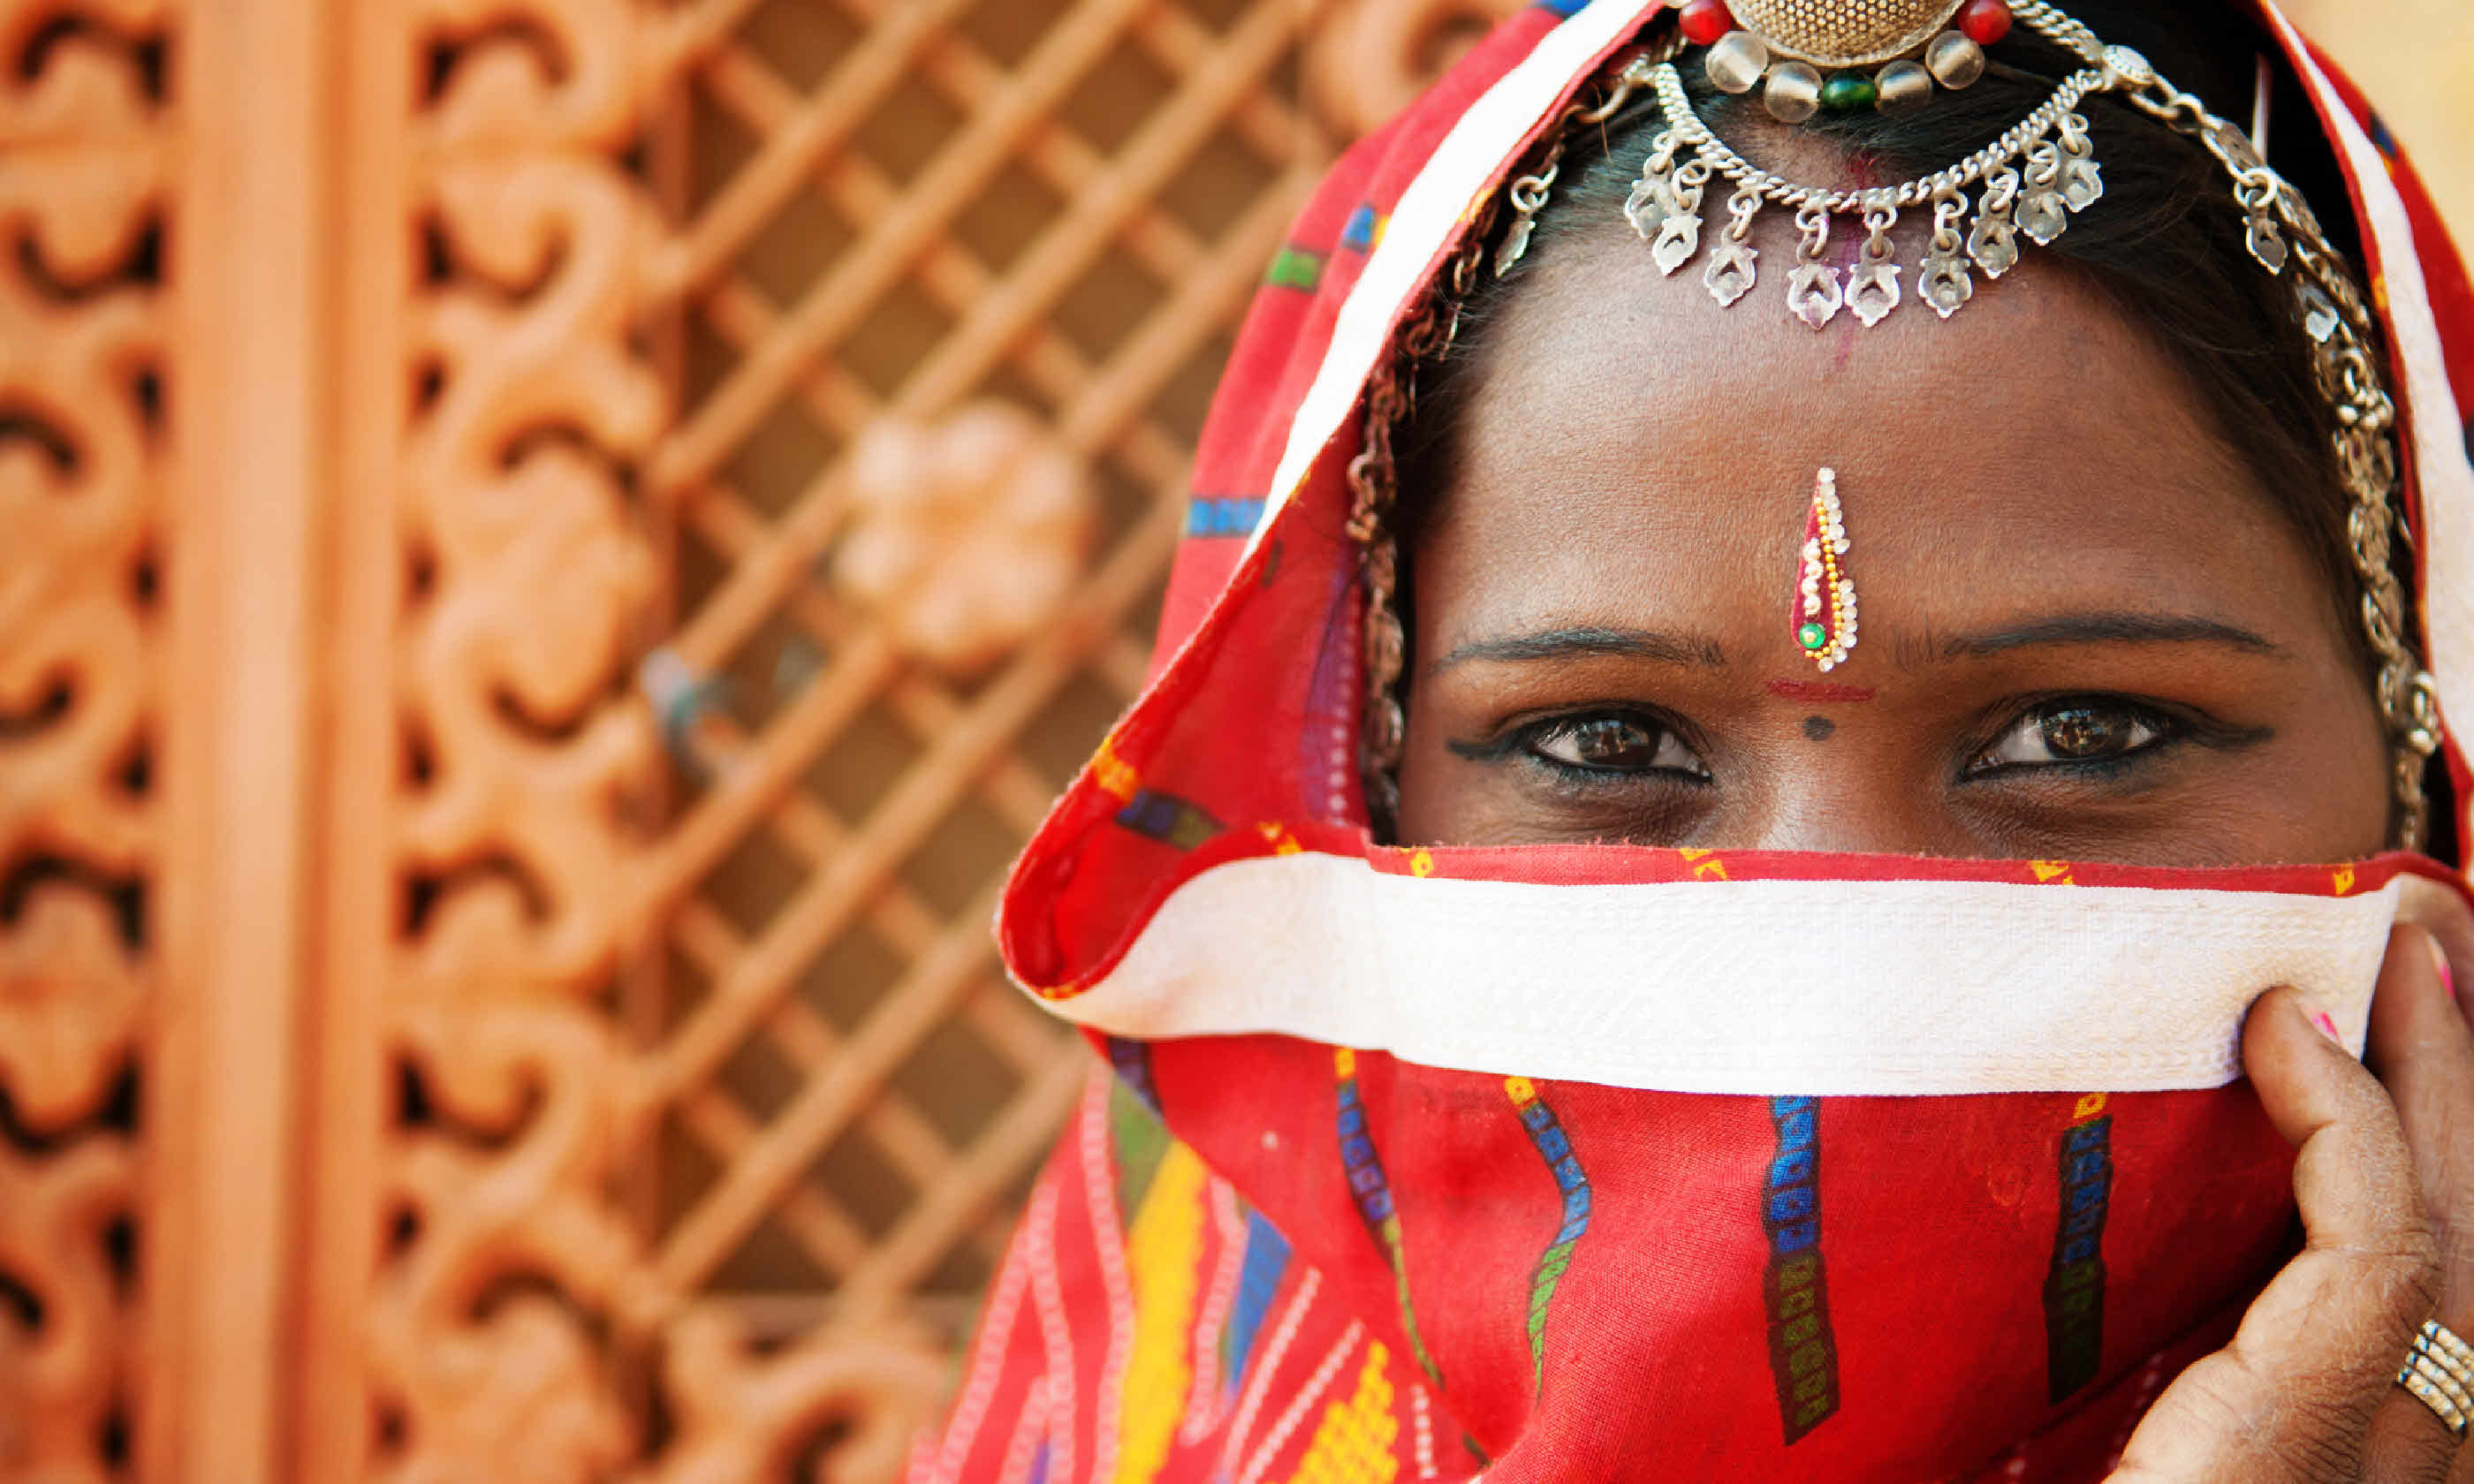 Indian woman in sari costume (Shutterstock: see credit below)